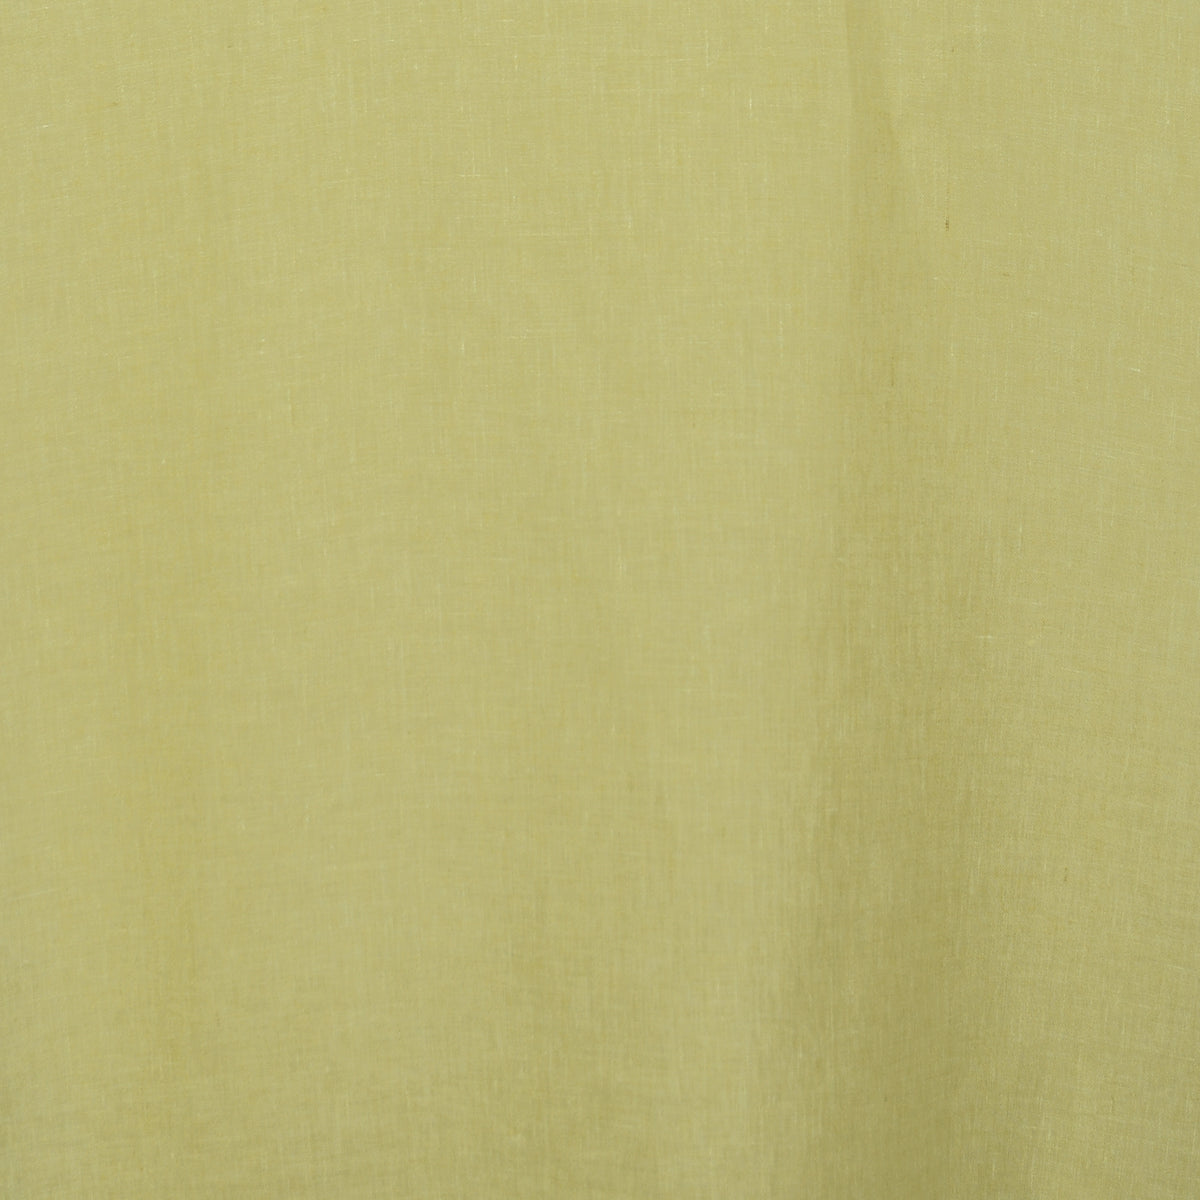 Day curtain yellow green Nana